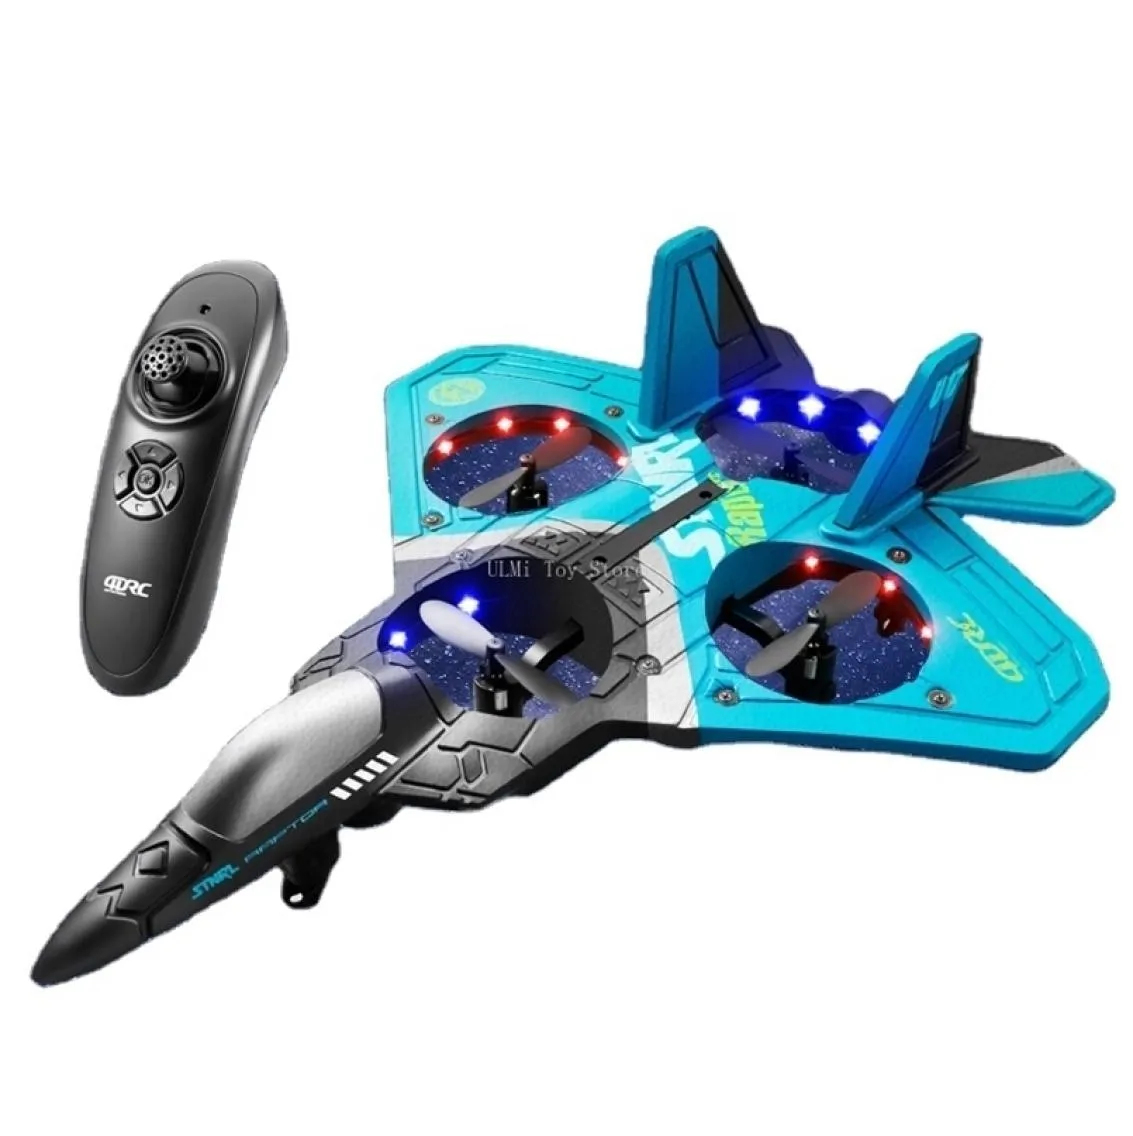 Aeronaves RC Electric V17 Avião de controle remoto 2 4G Plano de hobby planador Epp Toys Toys Drone Kids Gift L2211036259180